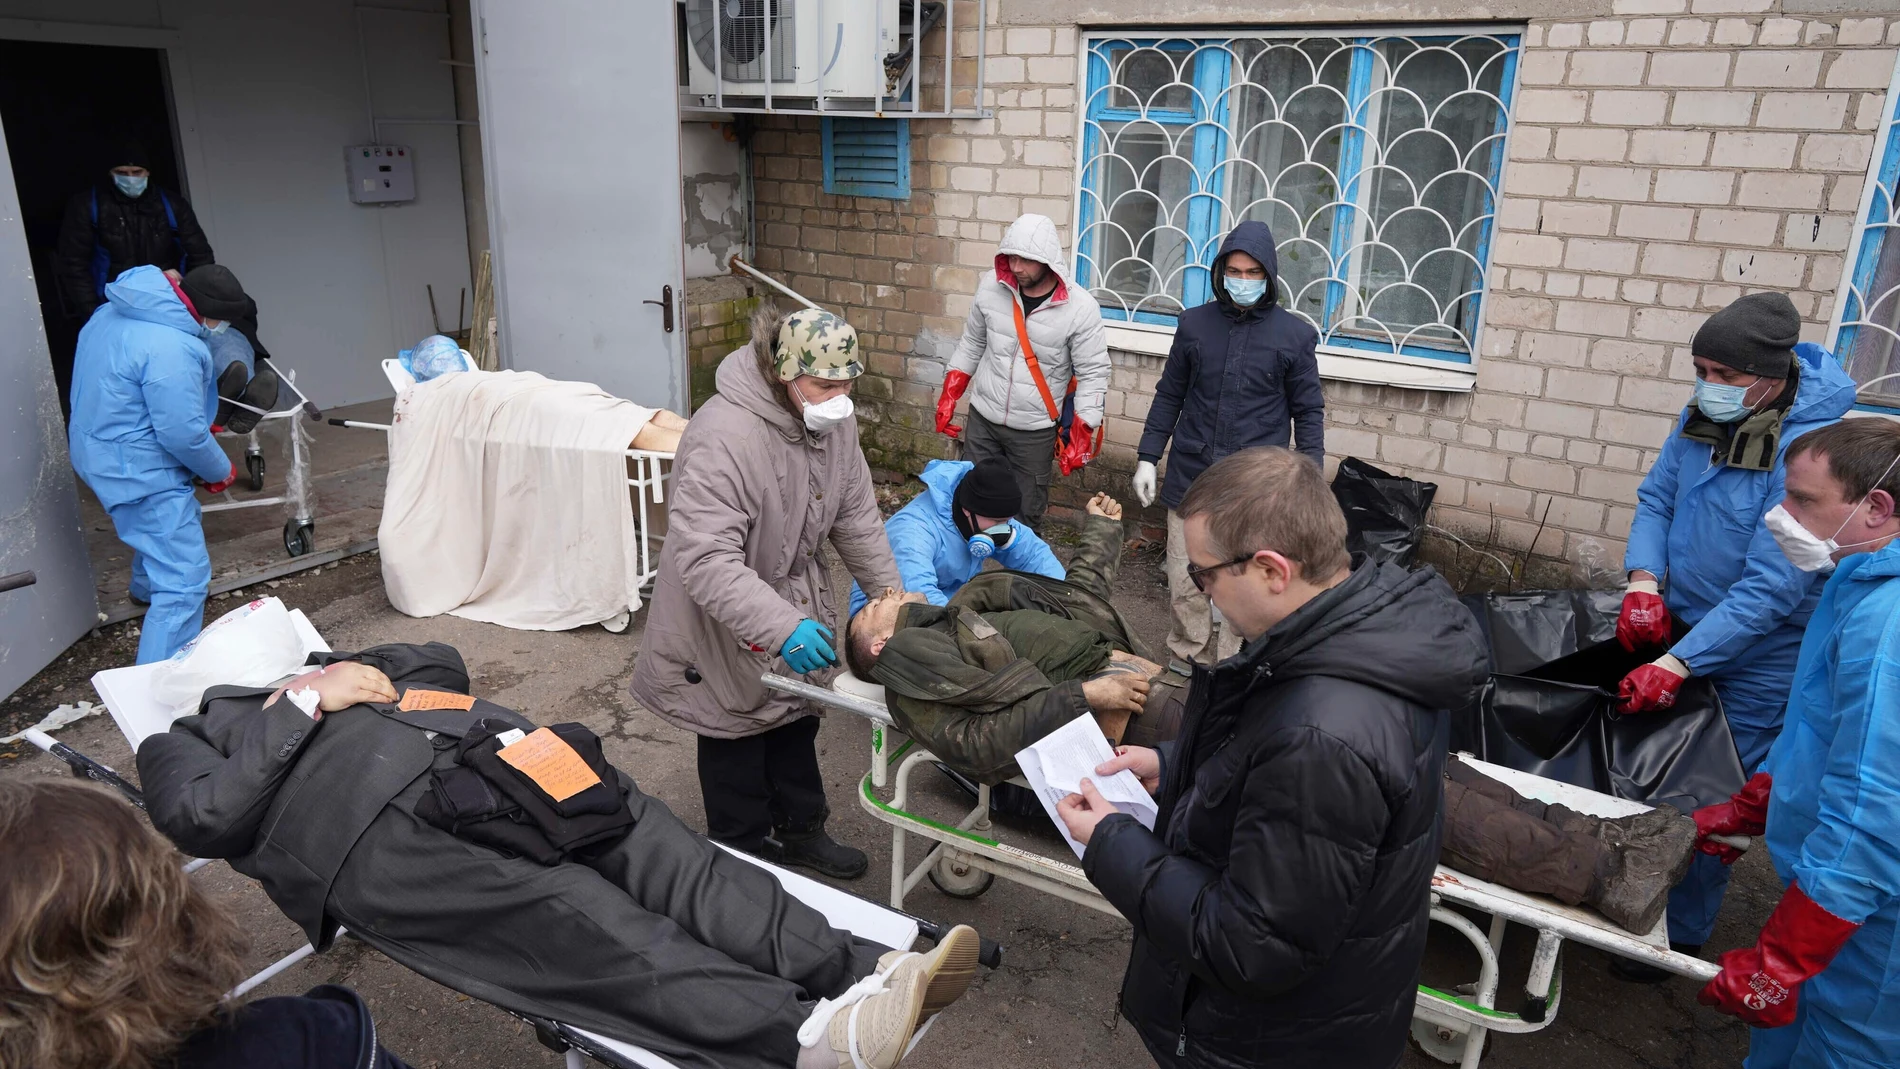 Los cadáveres se preparan antes de colocarlos en bolsas para cadáveres y enterrarlos en una fosa común en las afueras de Mariupol, Ucrania.